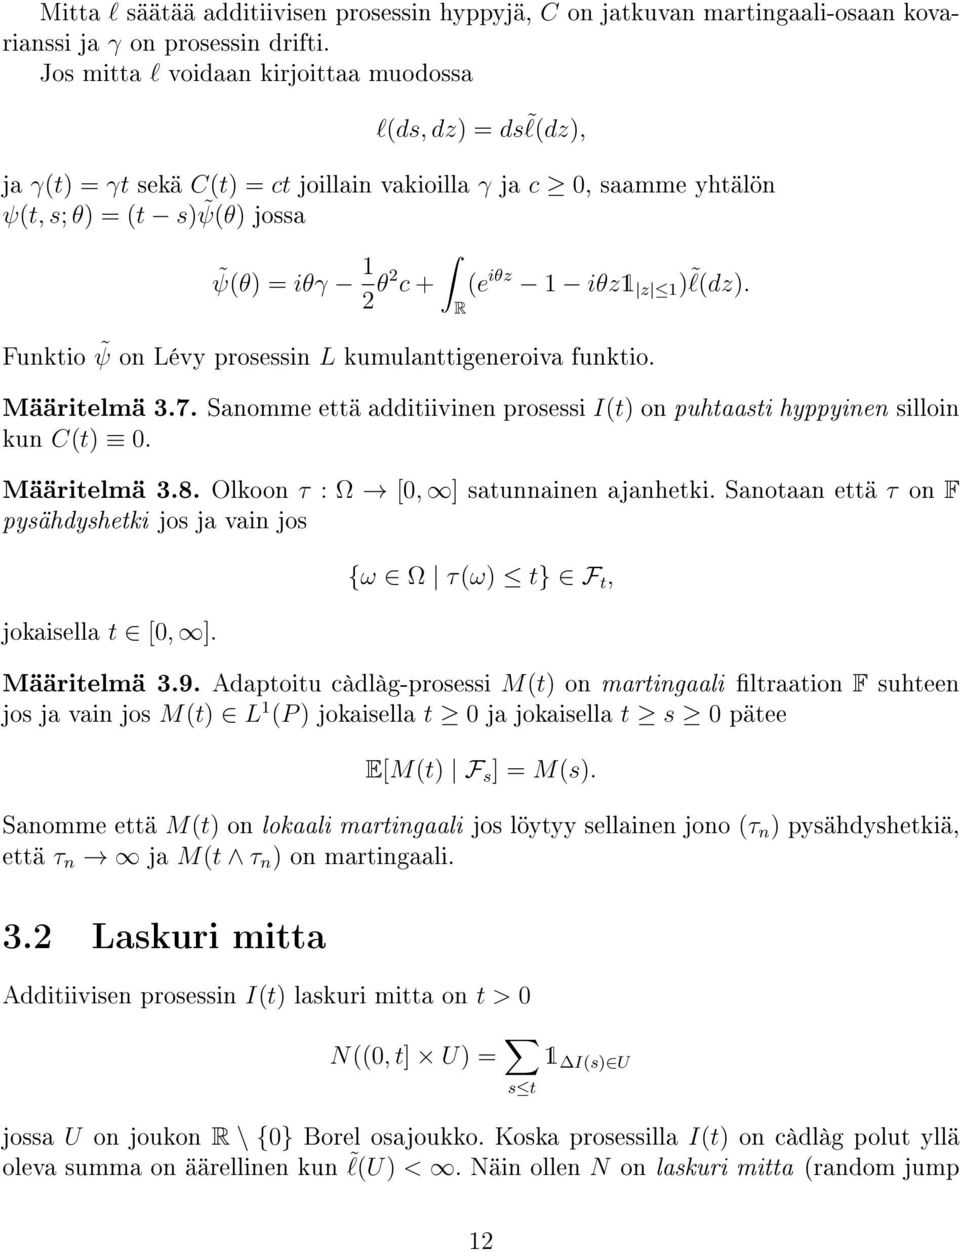 Funkio ψ on Lévy prosessin L kumulanigeneroiva funkio. R Määrielmä 3.7. Sanomme eä addiiivinen prosessi I( on puhaasi hyppyinen silloin kun C(. Määrielmä 3.8. Olkoon τ : Ω [, ] saunnainen ajanheki.